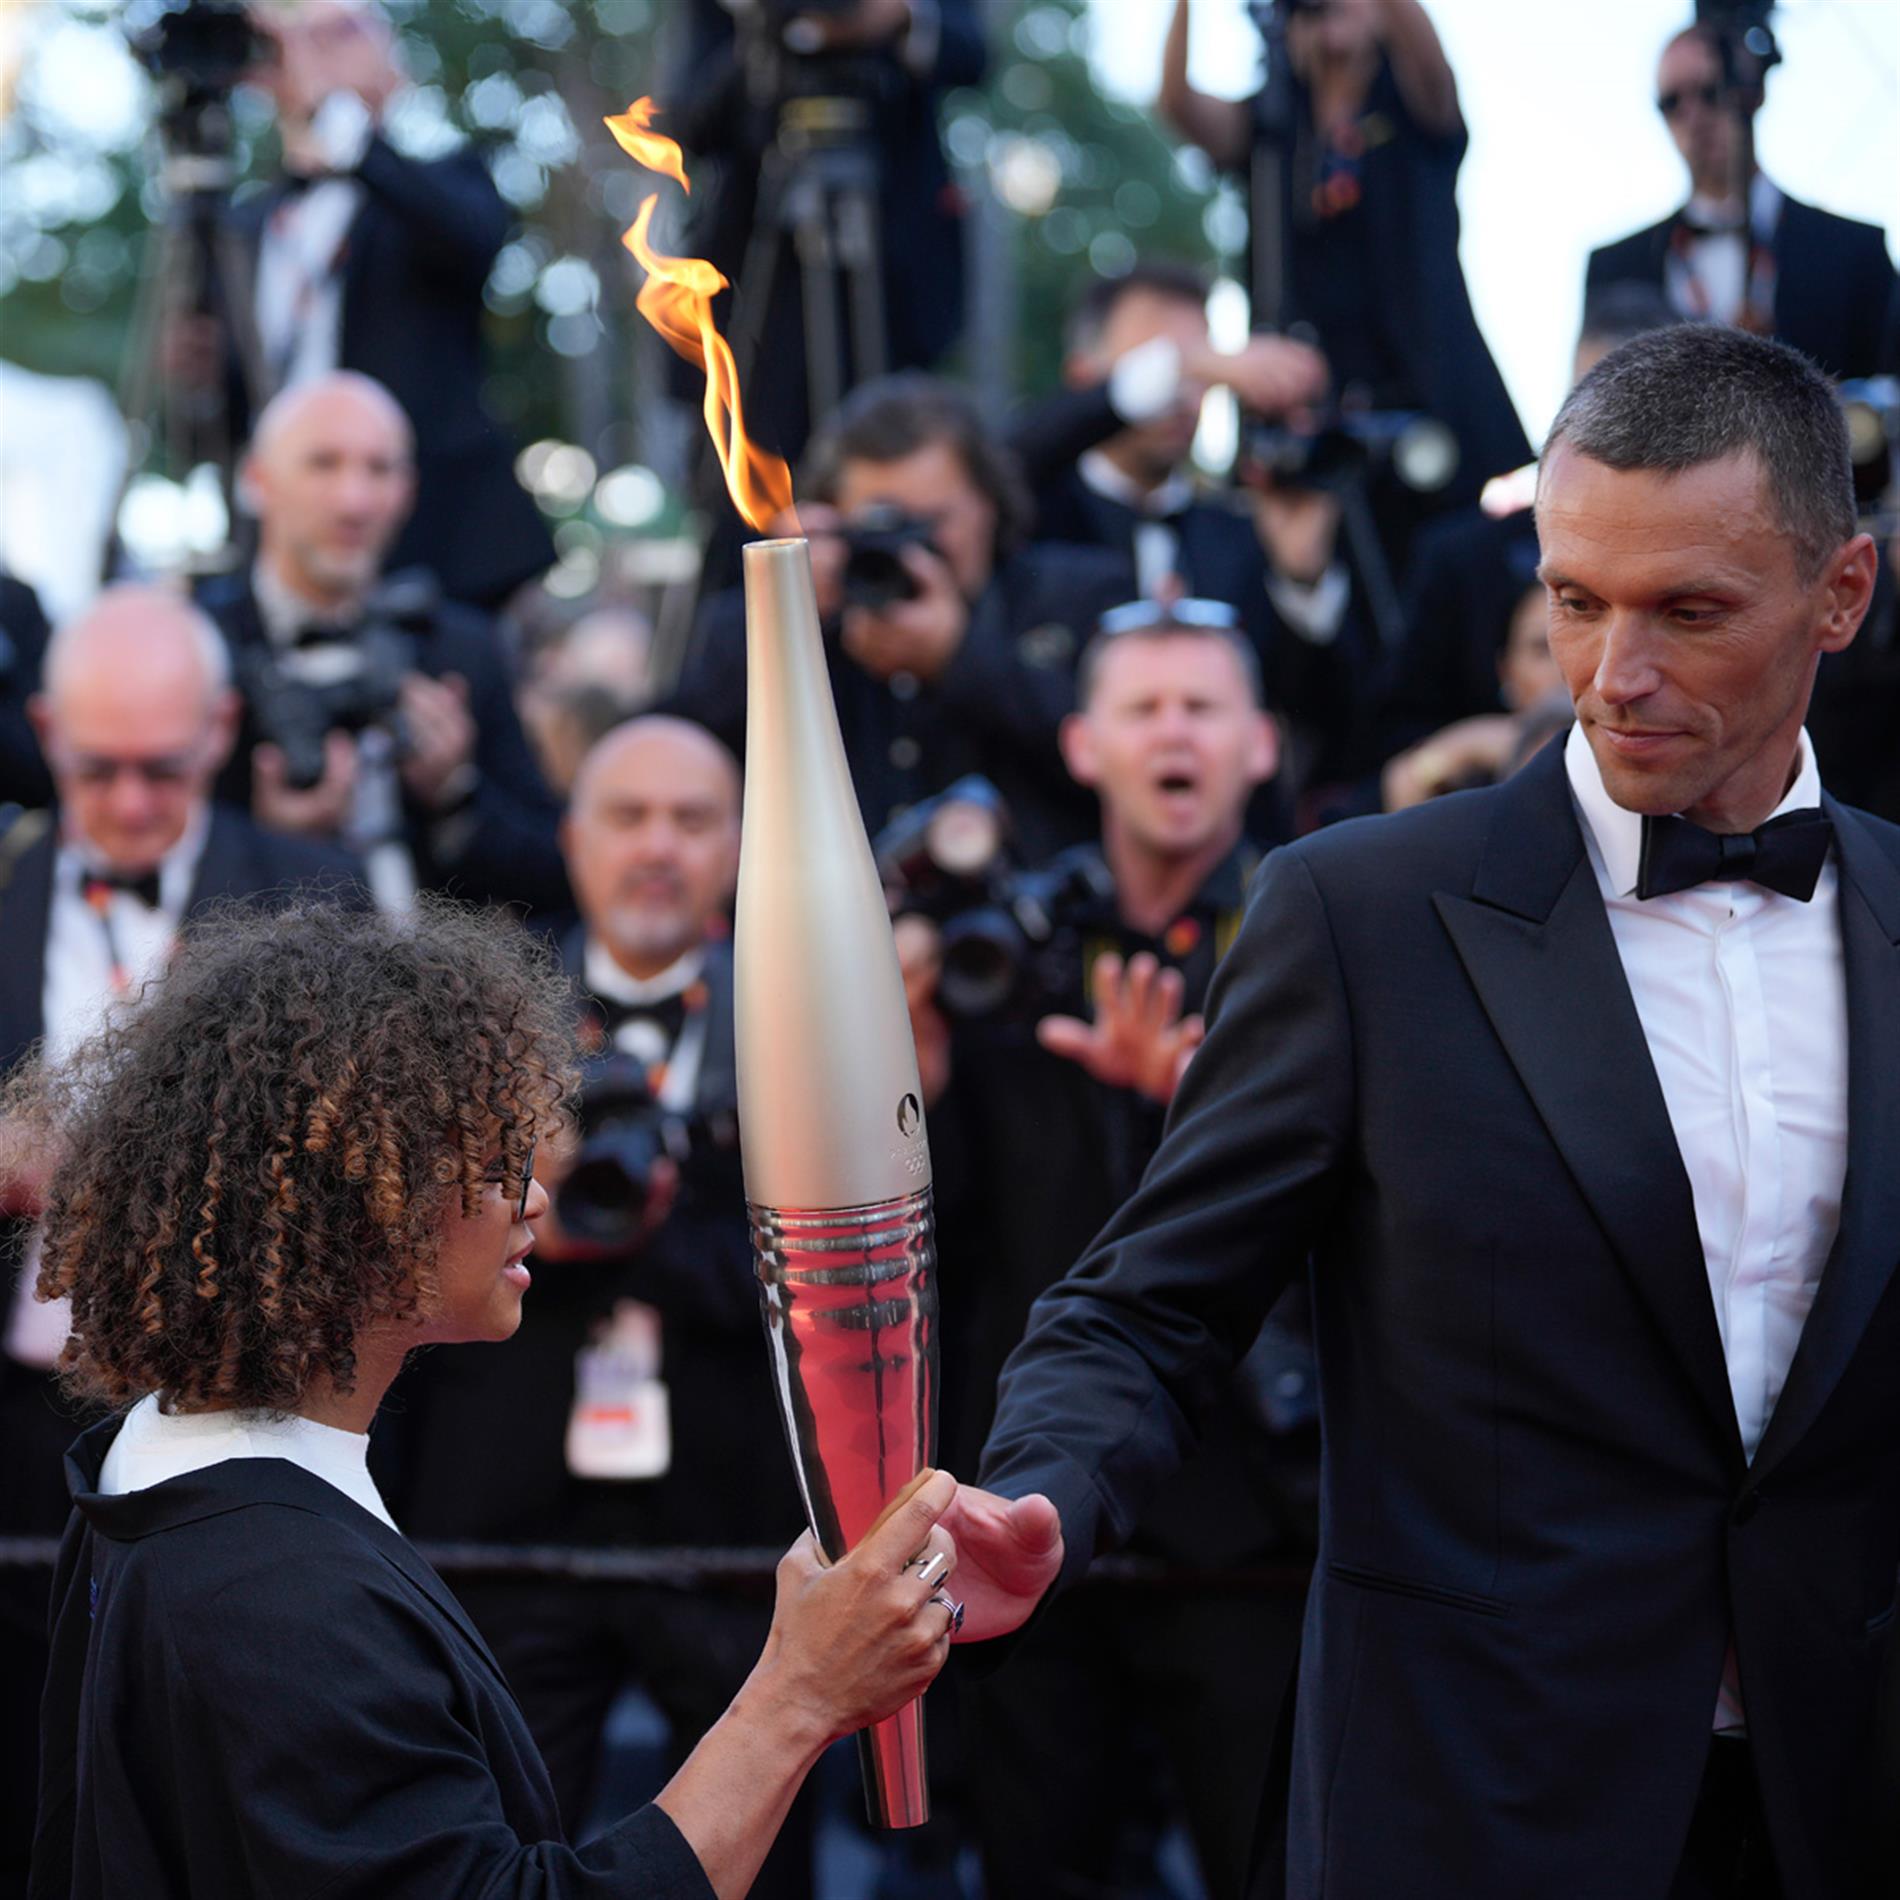 Στο Φεστιβάλ Καννών η Ολυμπιακή φλόγα - Πέρασε από το κόκκινο χαλί (Photos - Video)